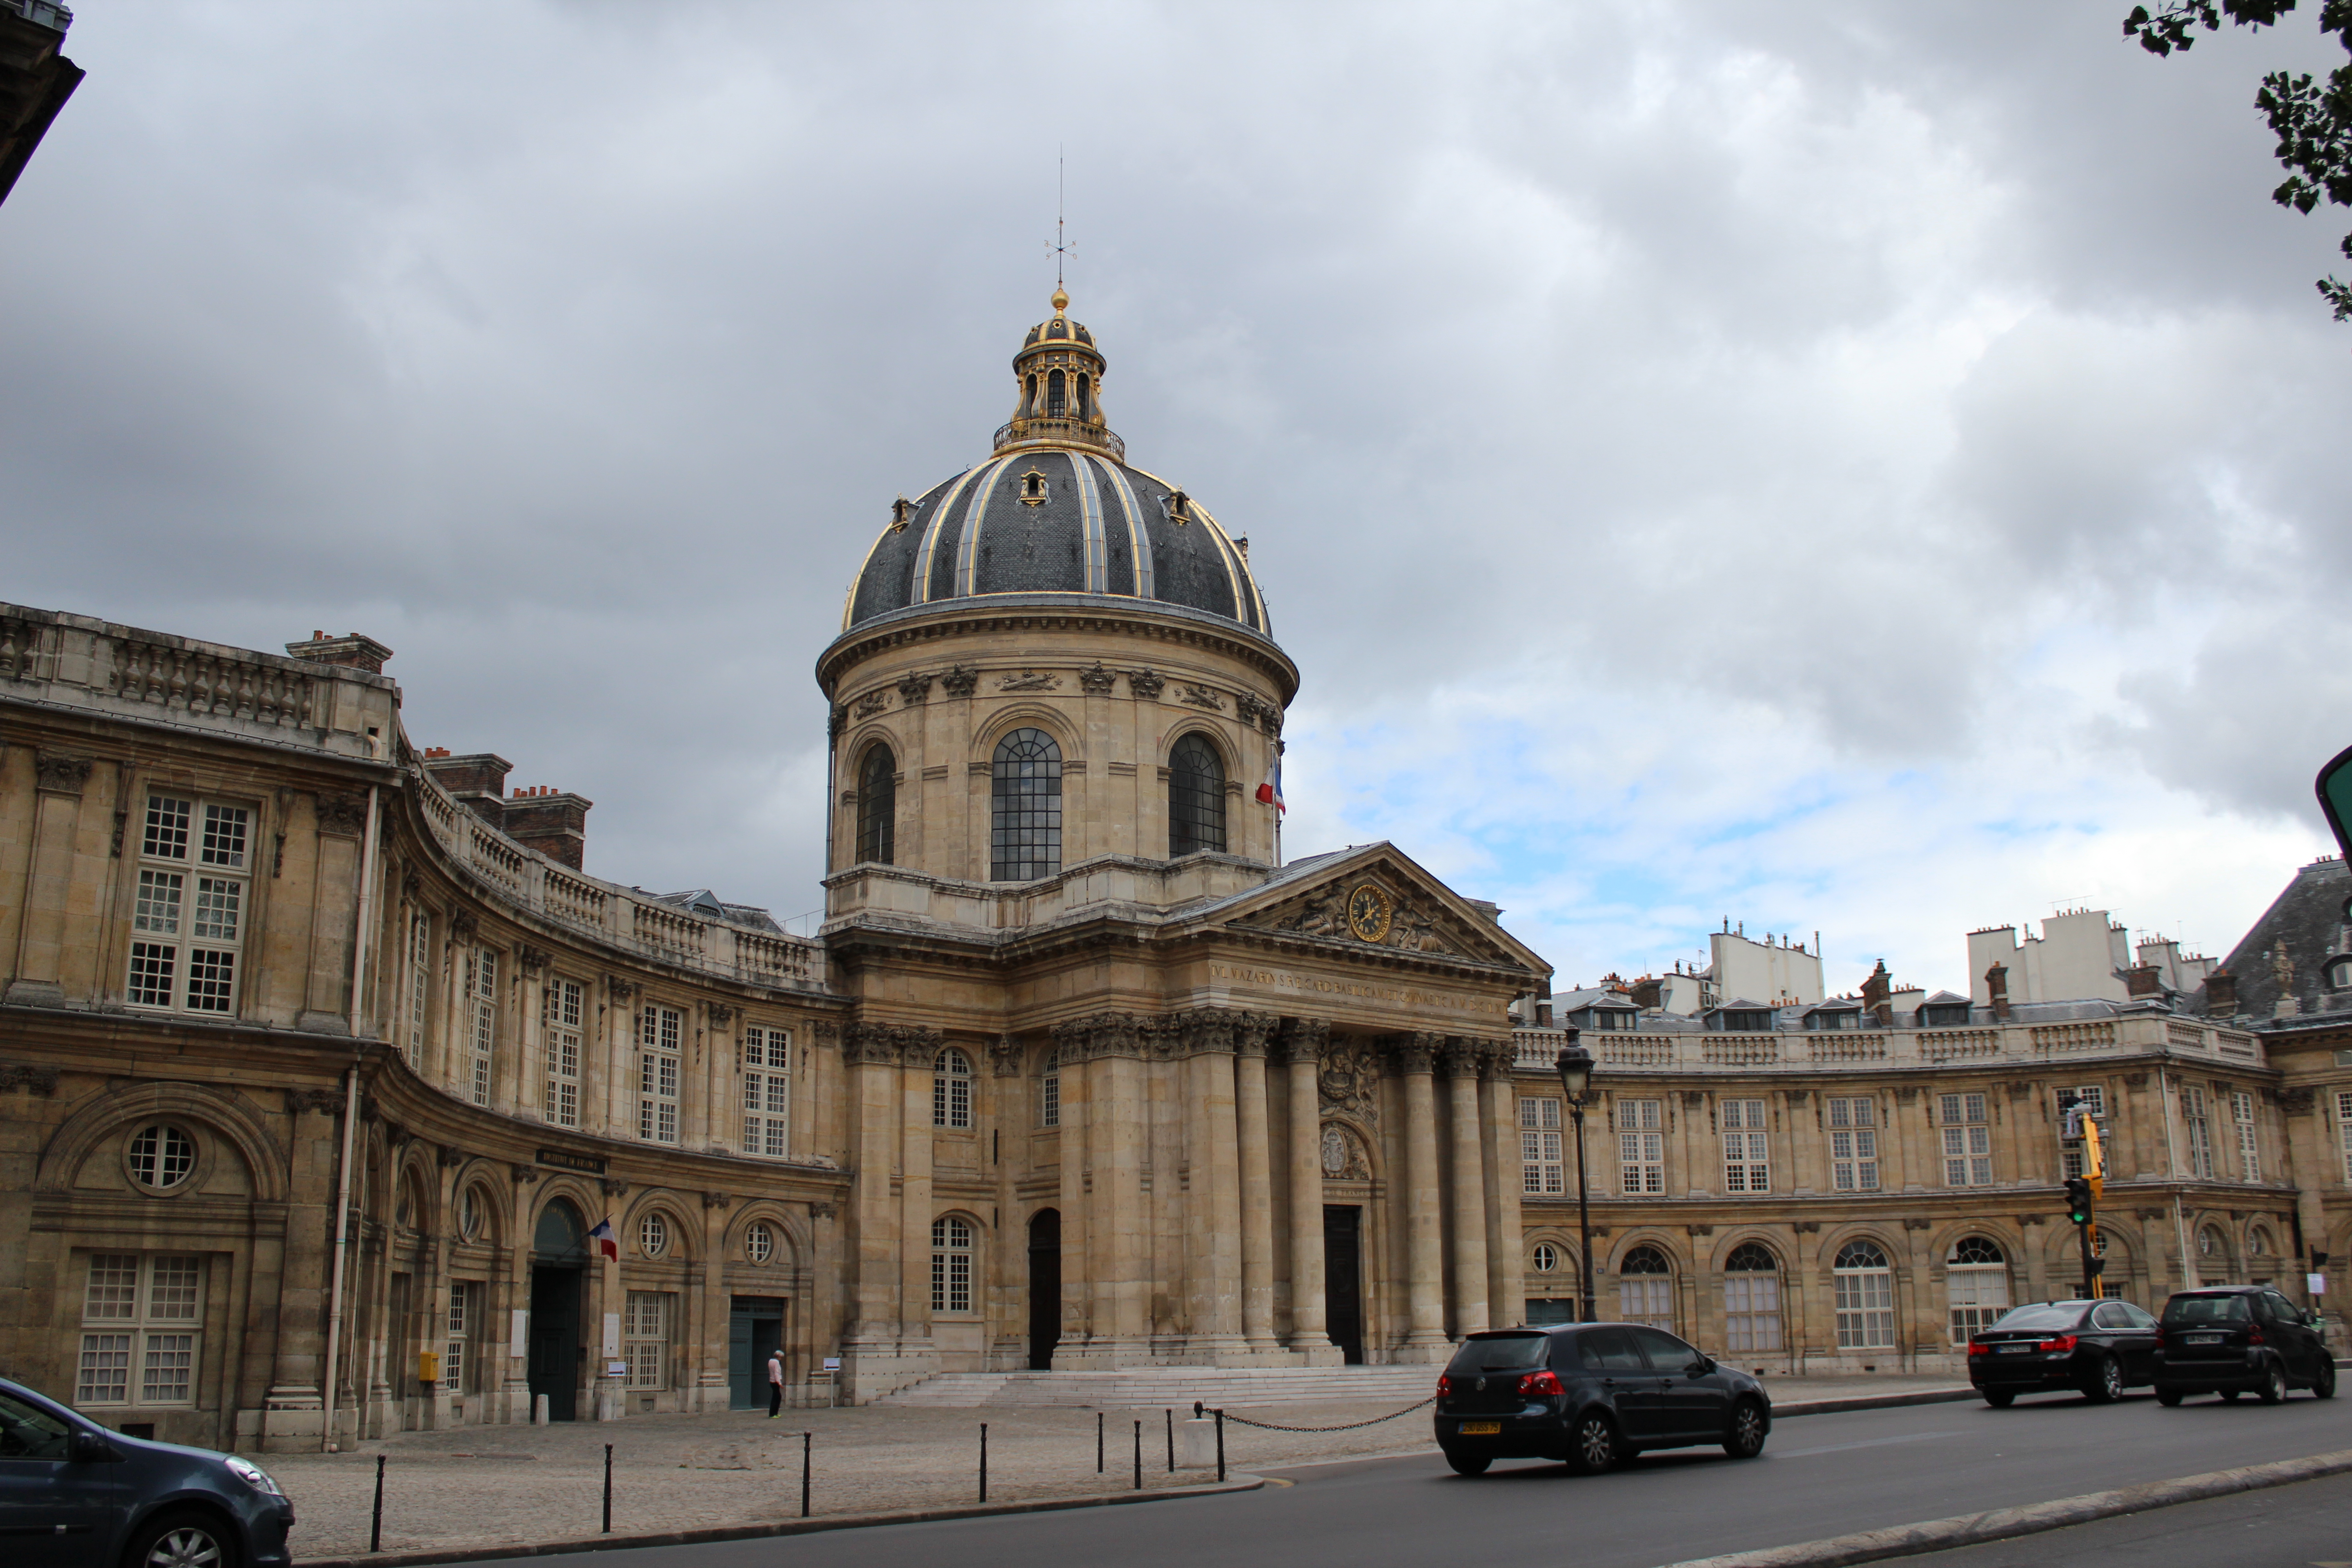 Классицизм во франции архитектура. Луи лево колледж четырех наций Париж. Коллеж четырех наций в Париже. Колледж 4 наций в Париже. Колледж Мазарини Париж.